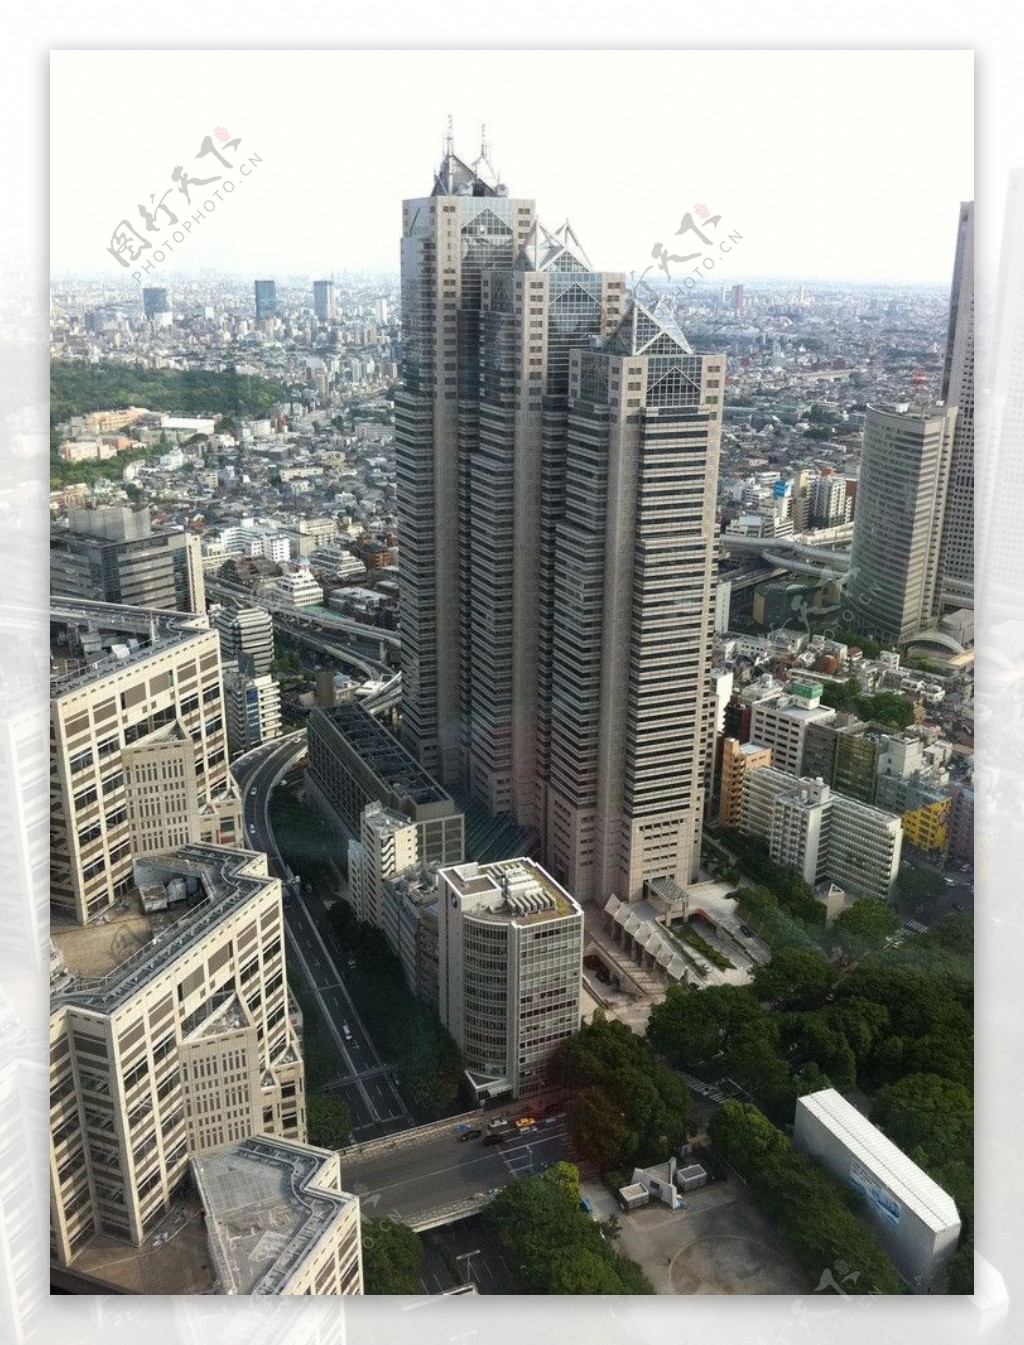 日本城市图片